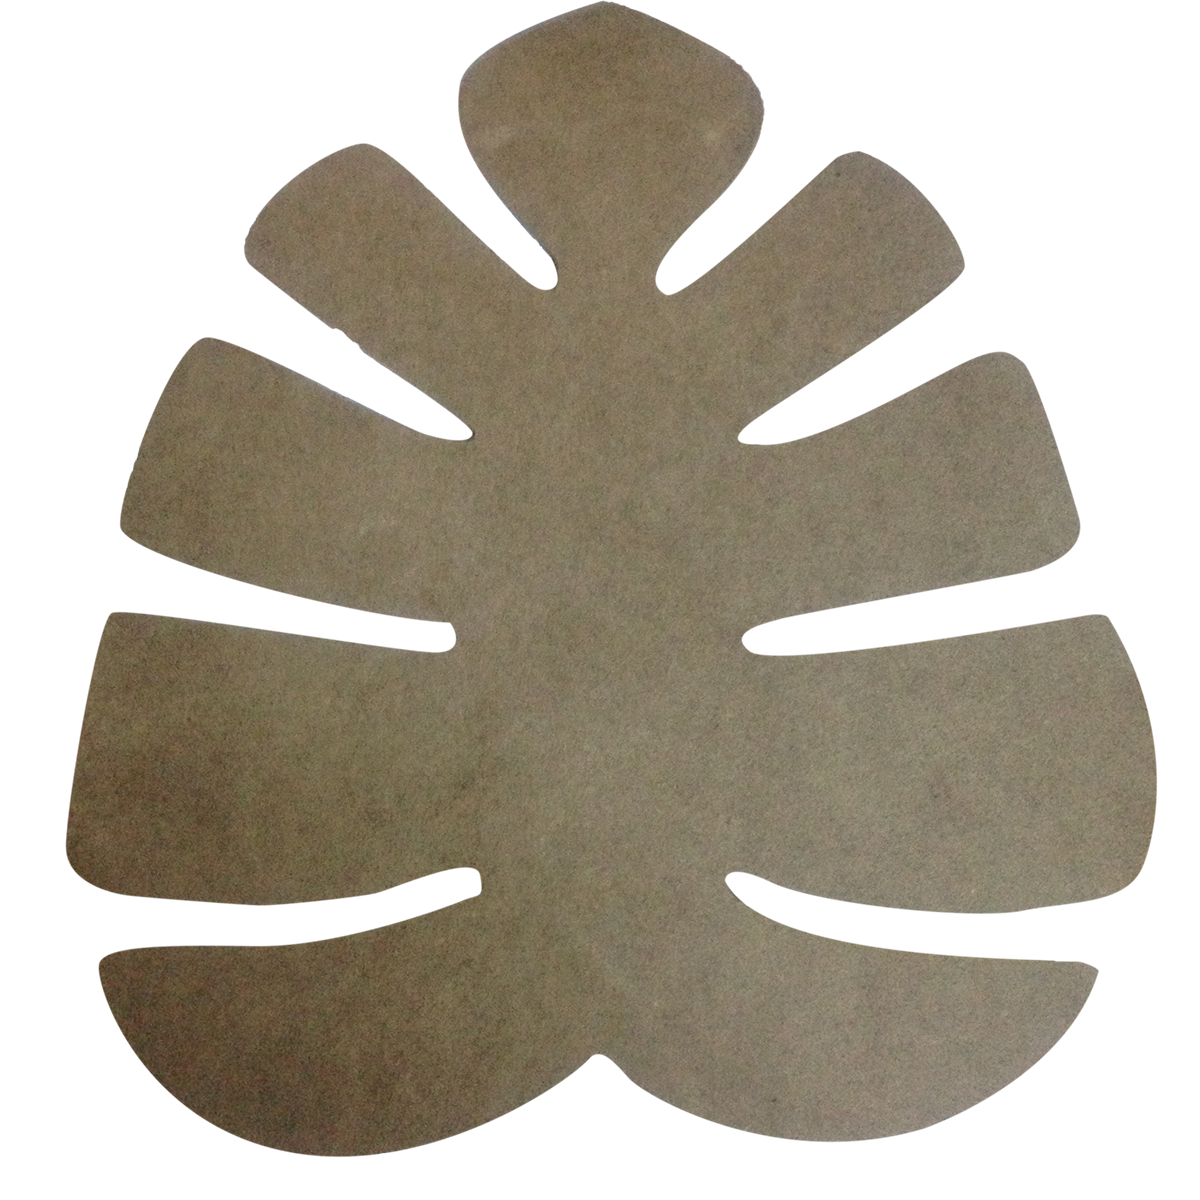 ورقة خشبية سوبلا (تحت الخدمة) - 35x31.5 سم